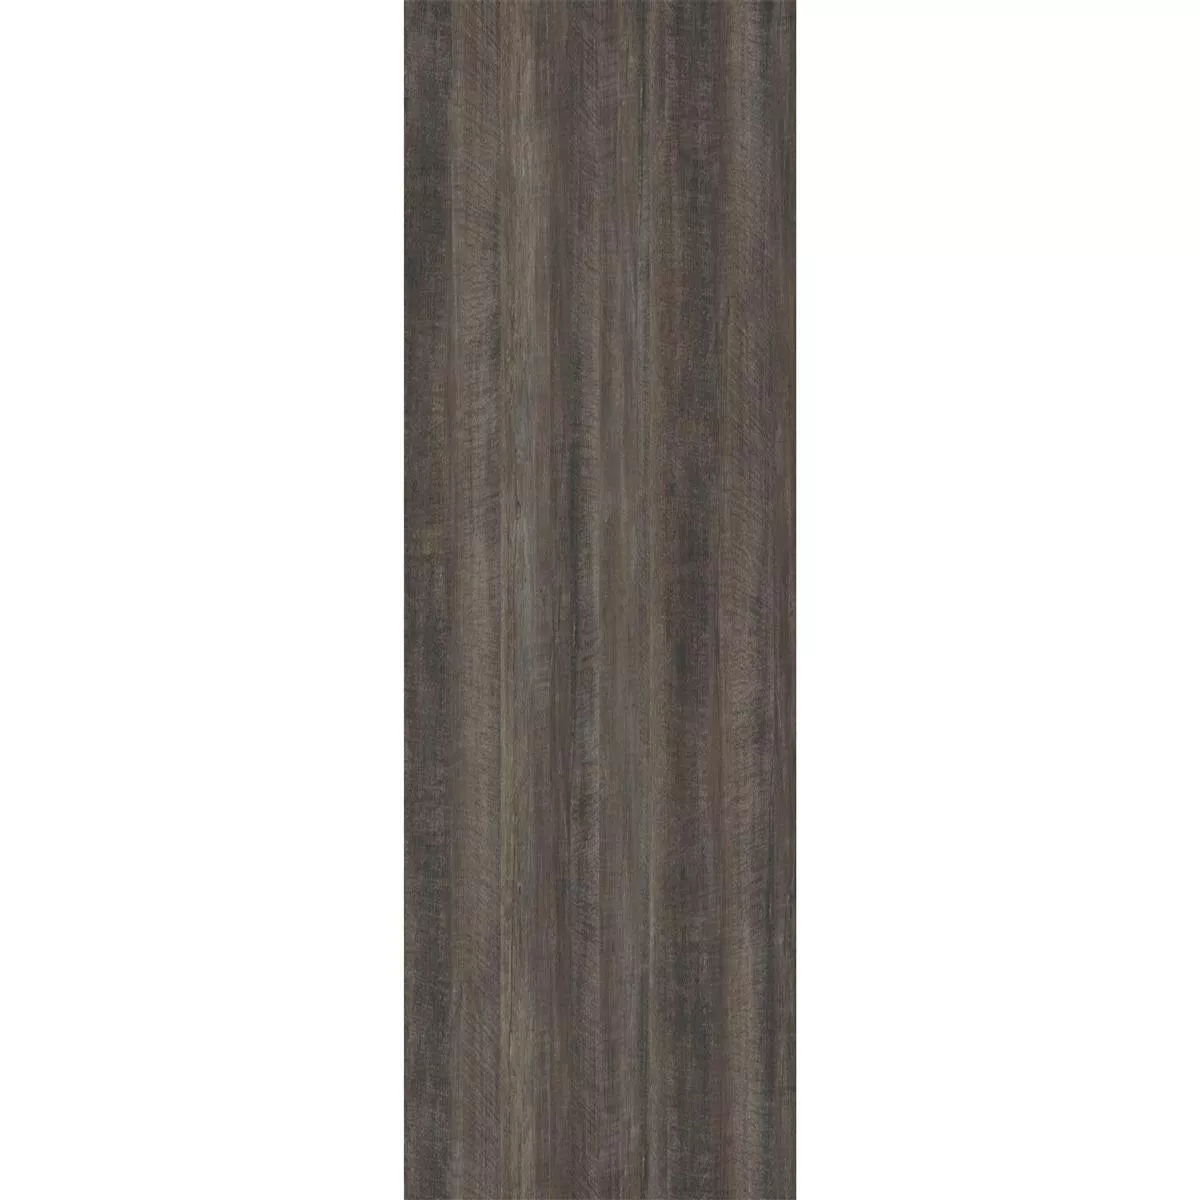 Piastrelle In Vinile Sistema A Clic Tripton Marrone Scuro 17,2x121cm